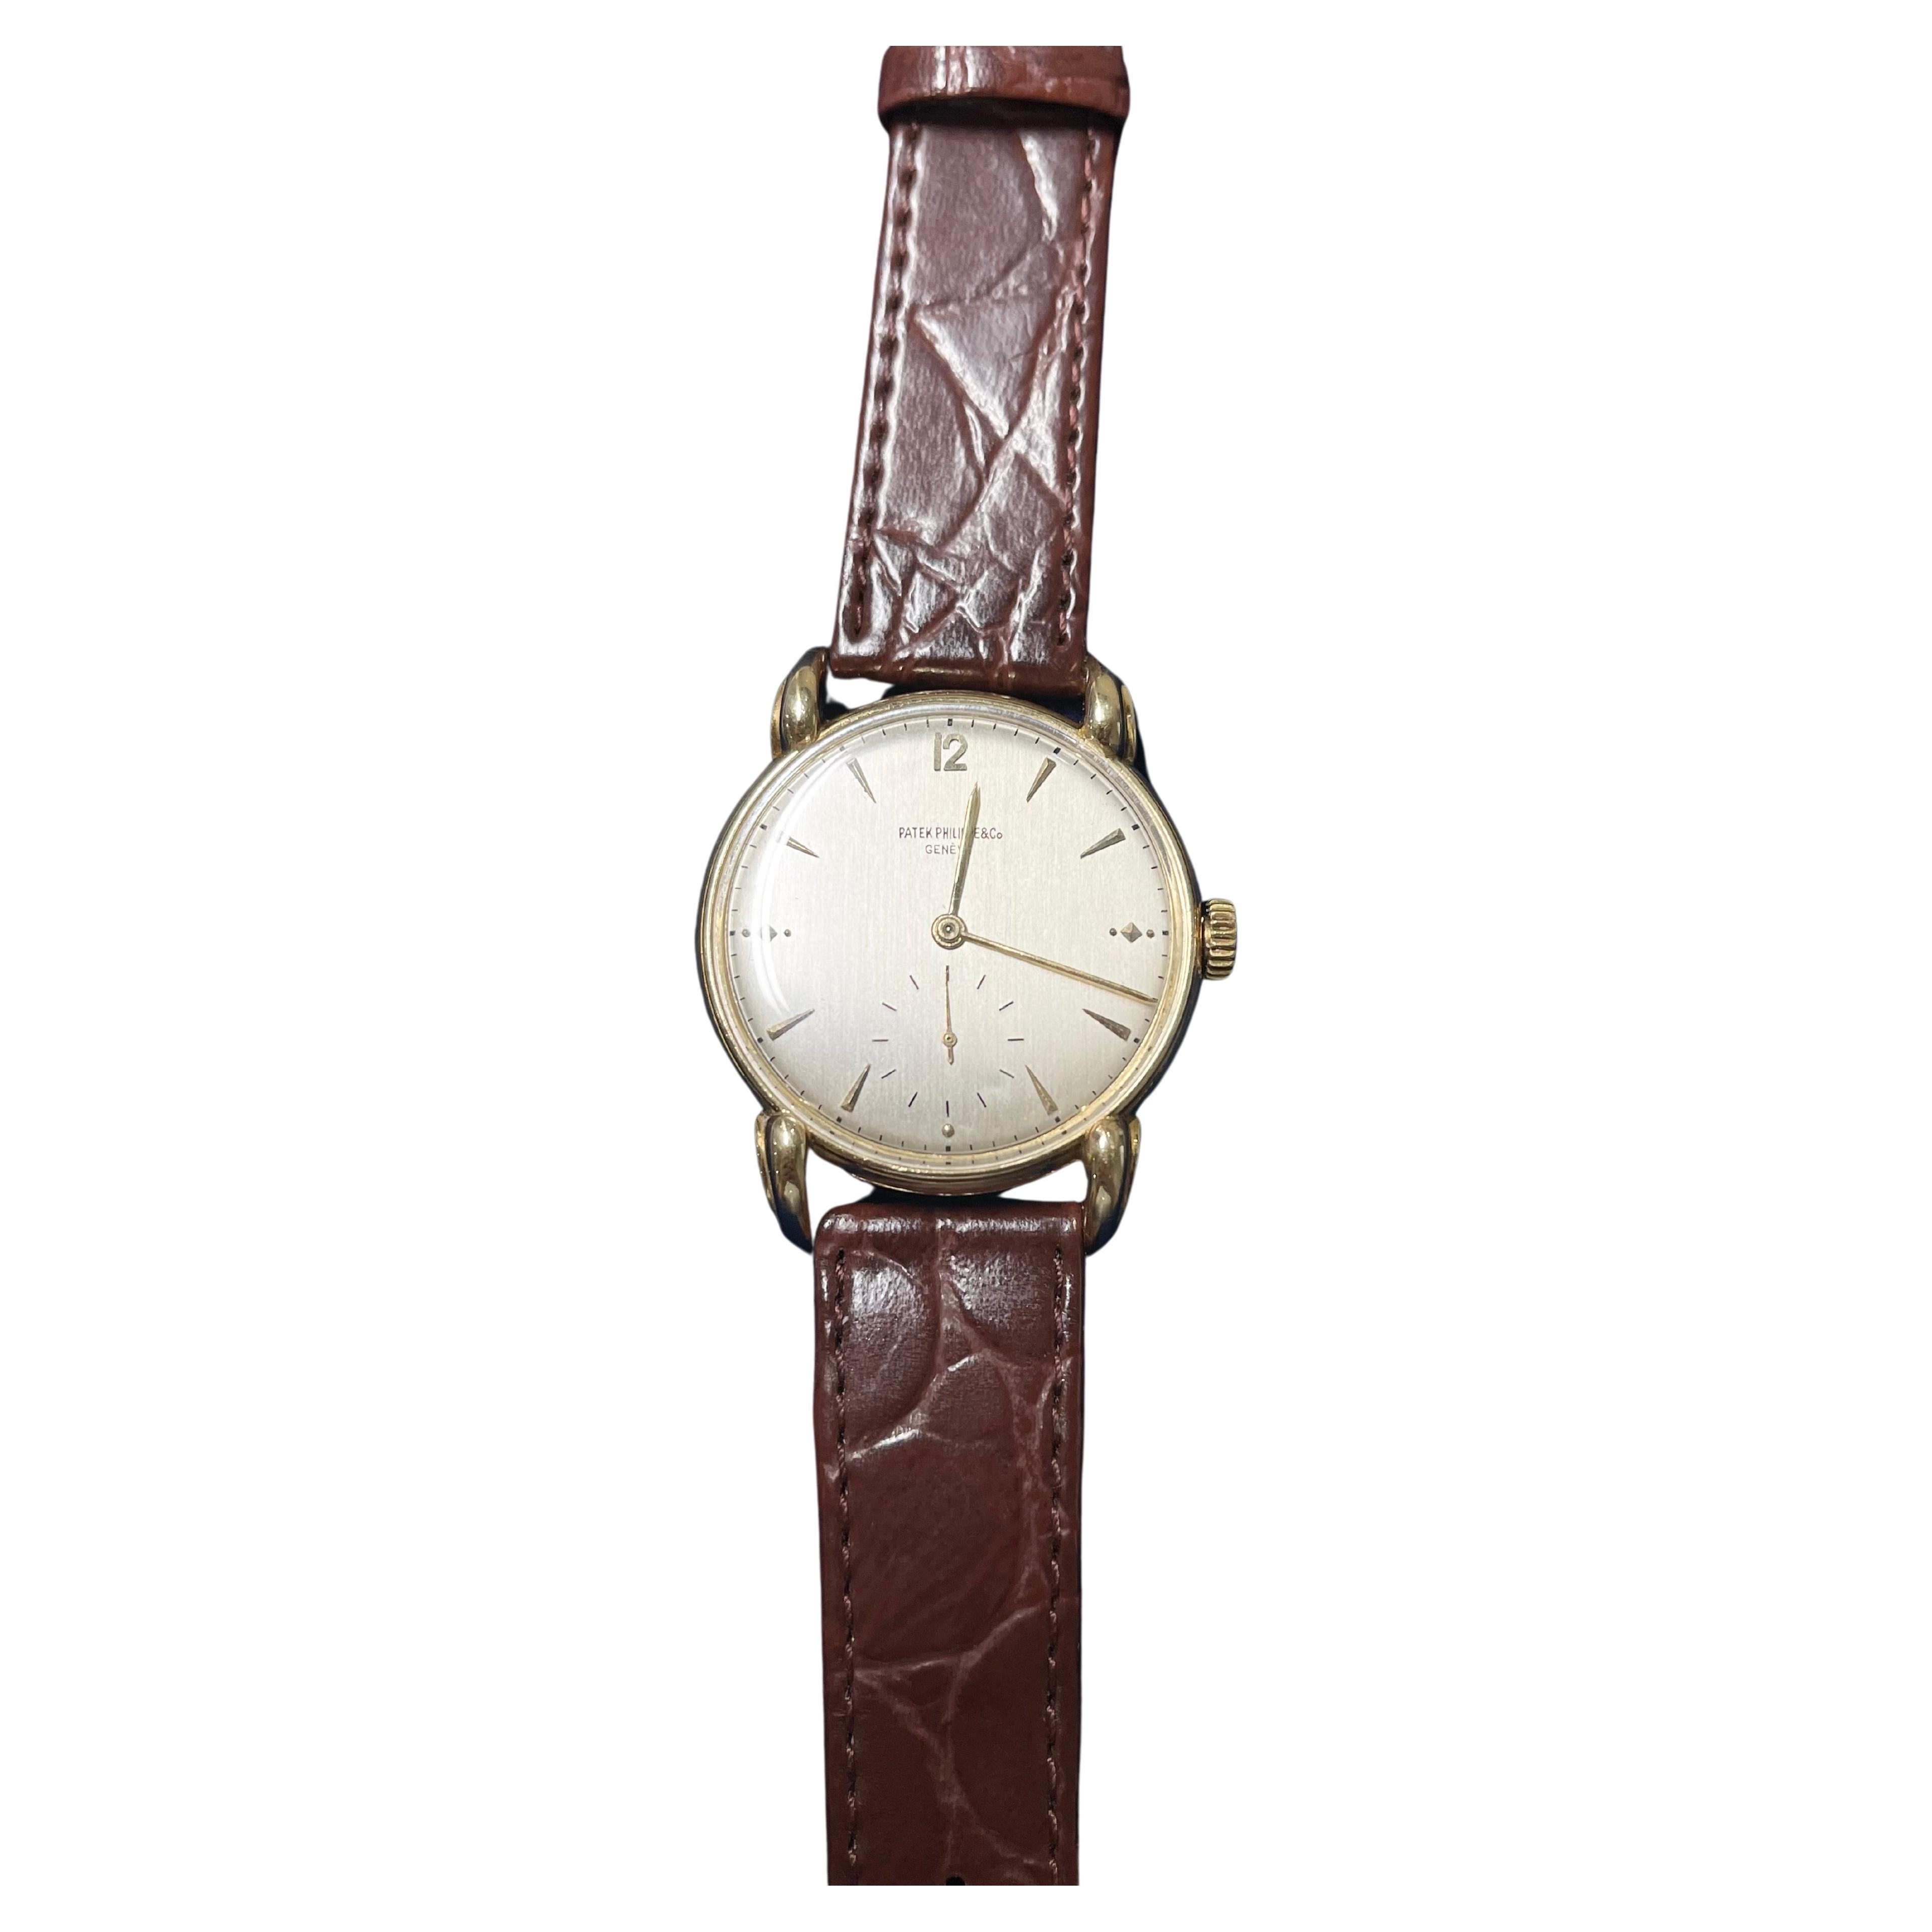 Patek Philippe Handwriting Vintage Watch Ref. 1590 18k YG .750